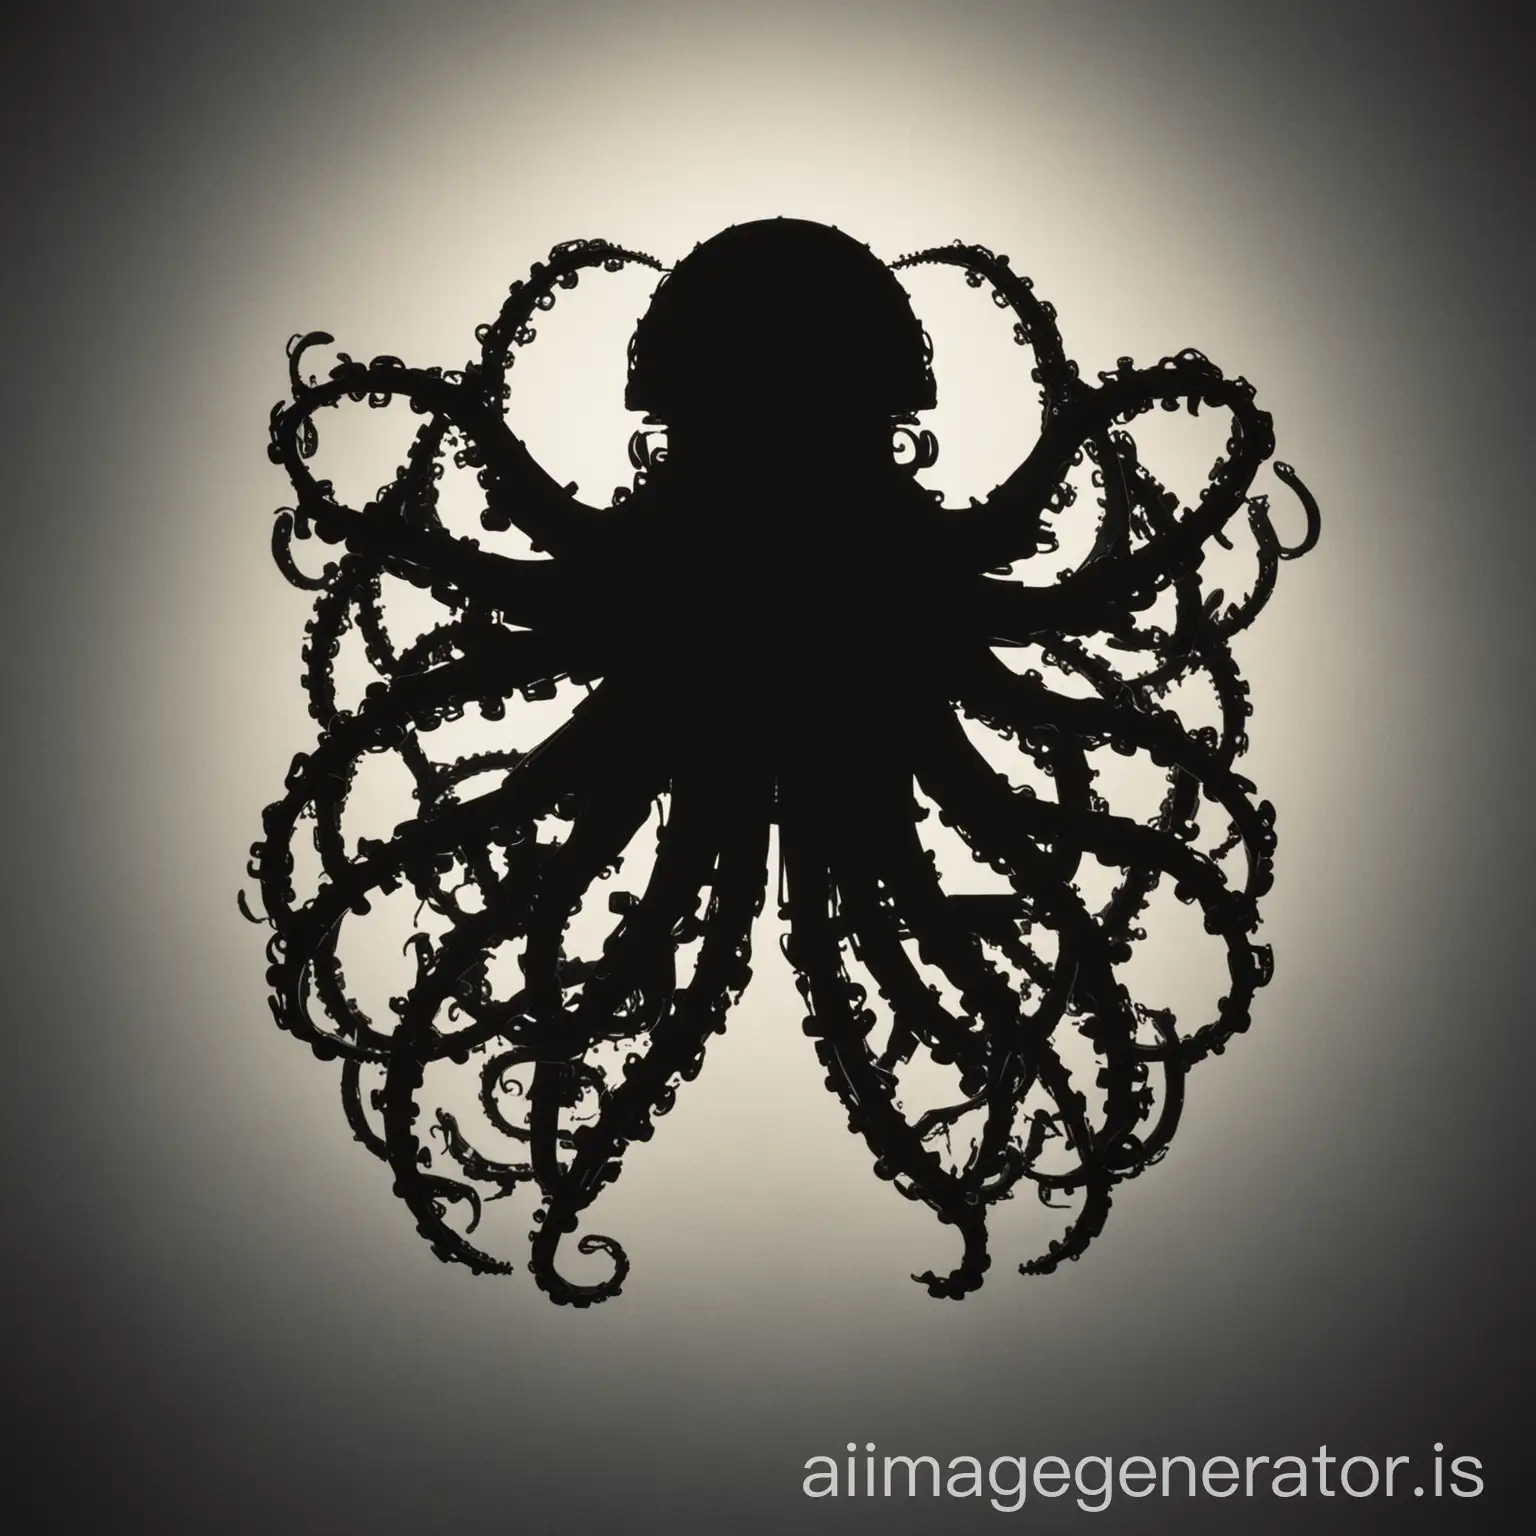 a silhouette octopass